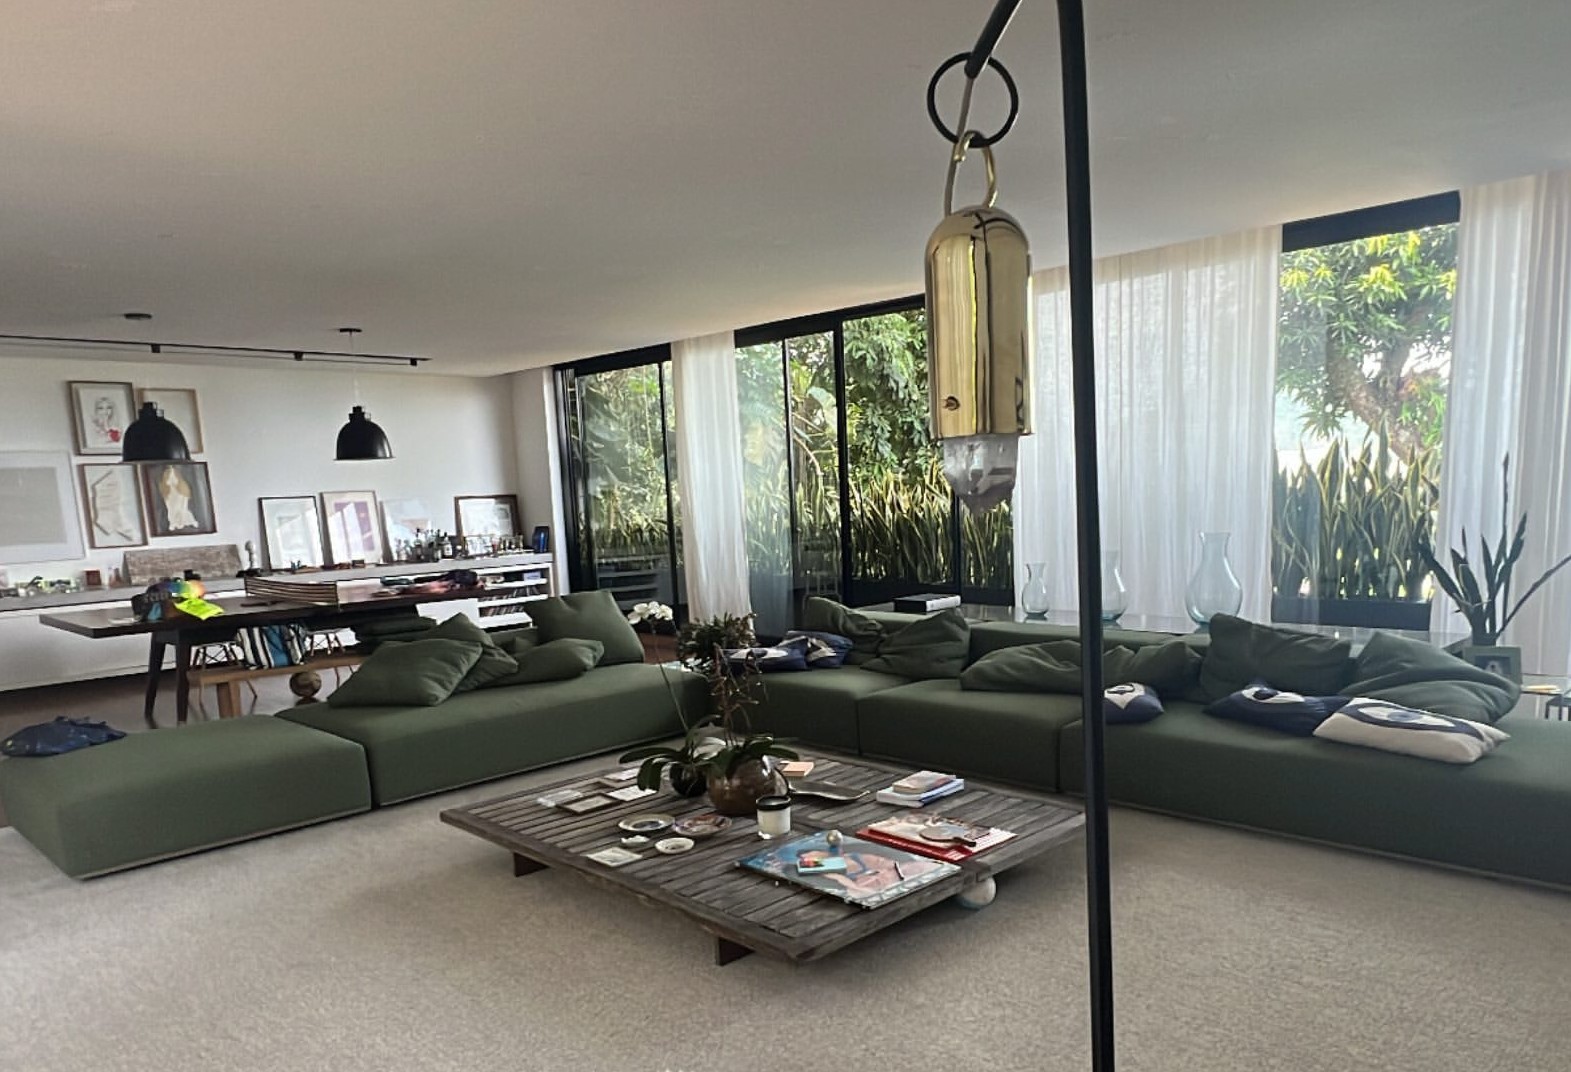 Carolina Dieckmann compartilha foto de sua sala de estar